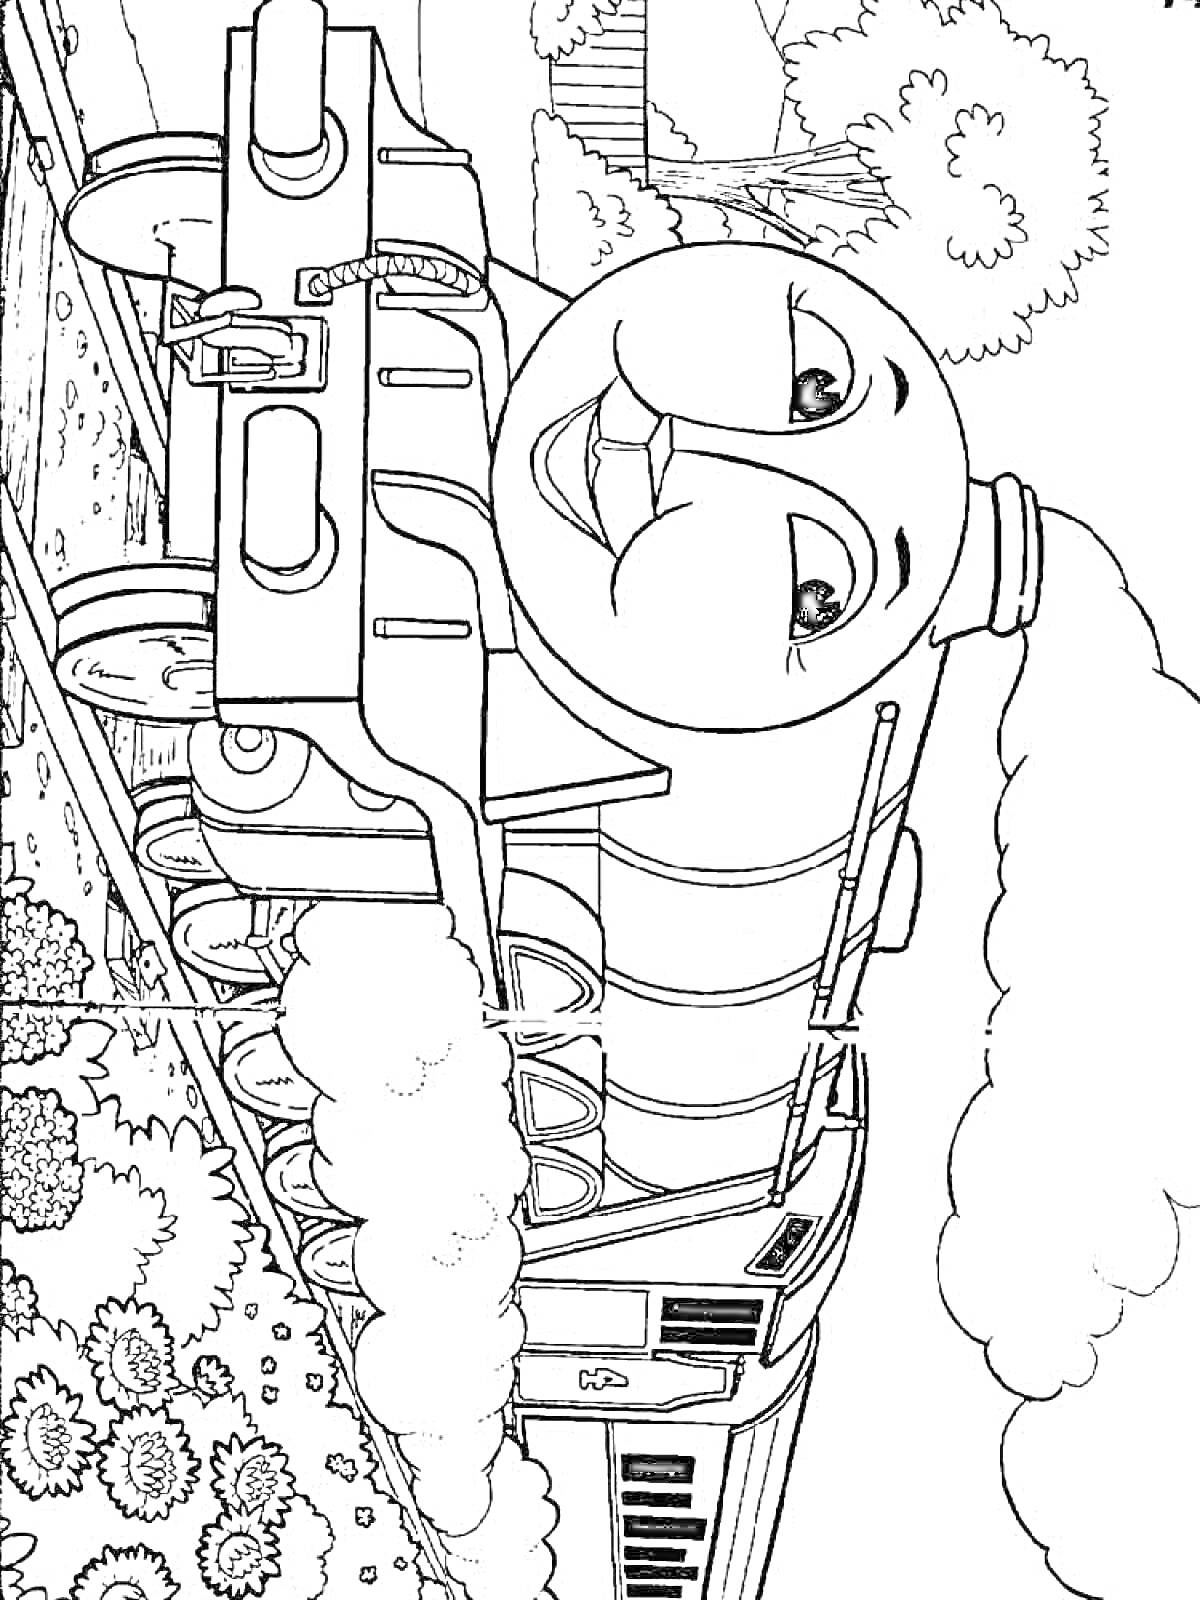 Раскраска Паровозик Томас на железной дороге с деревьями и кустами на заднем плане.